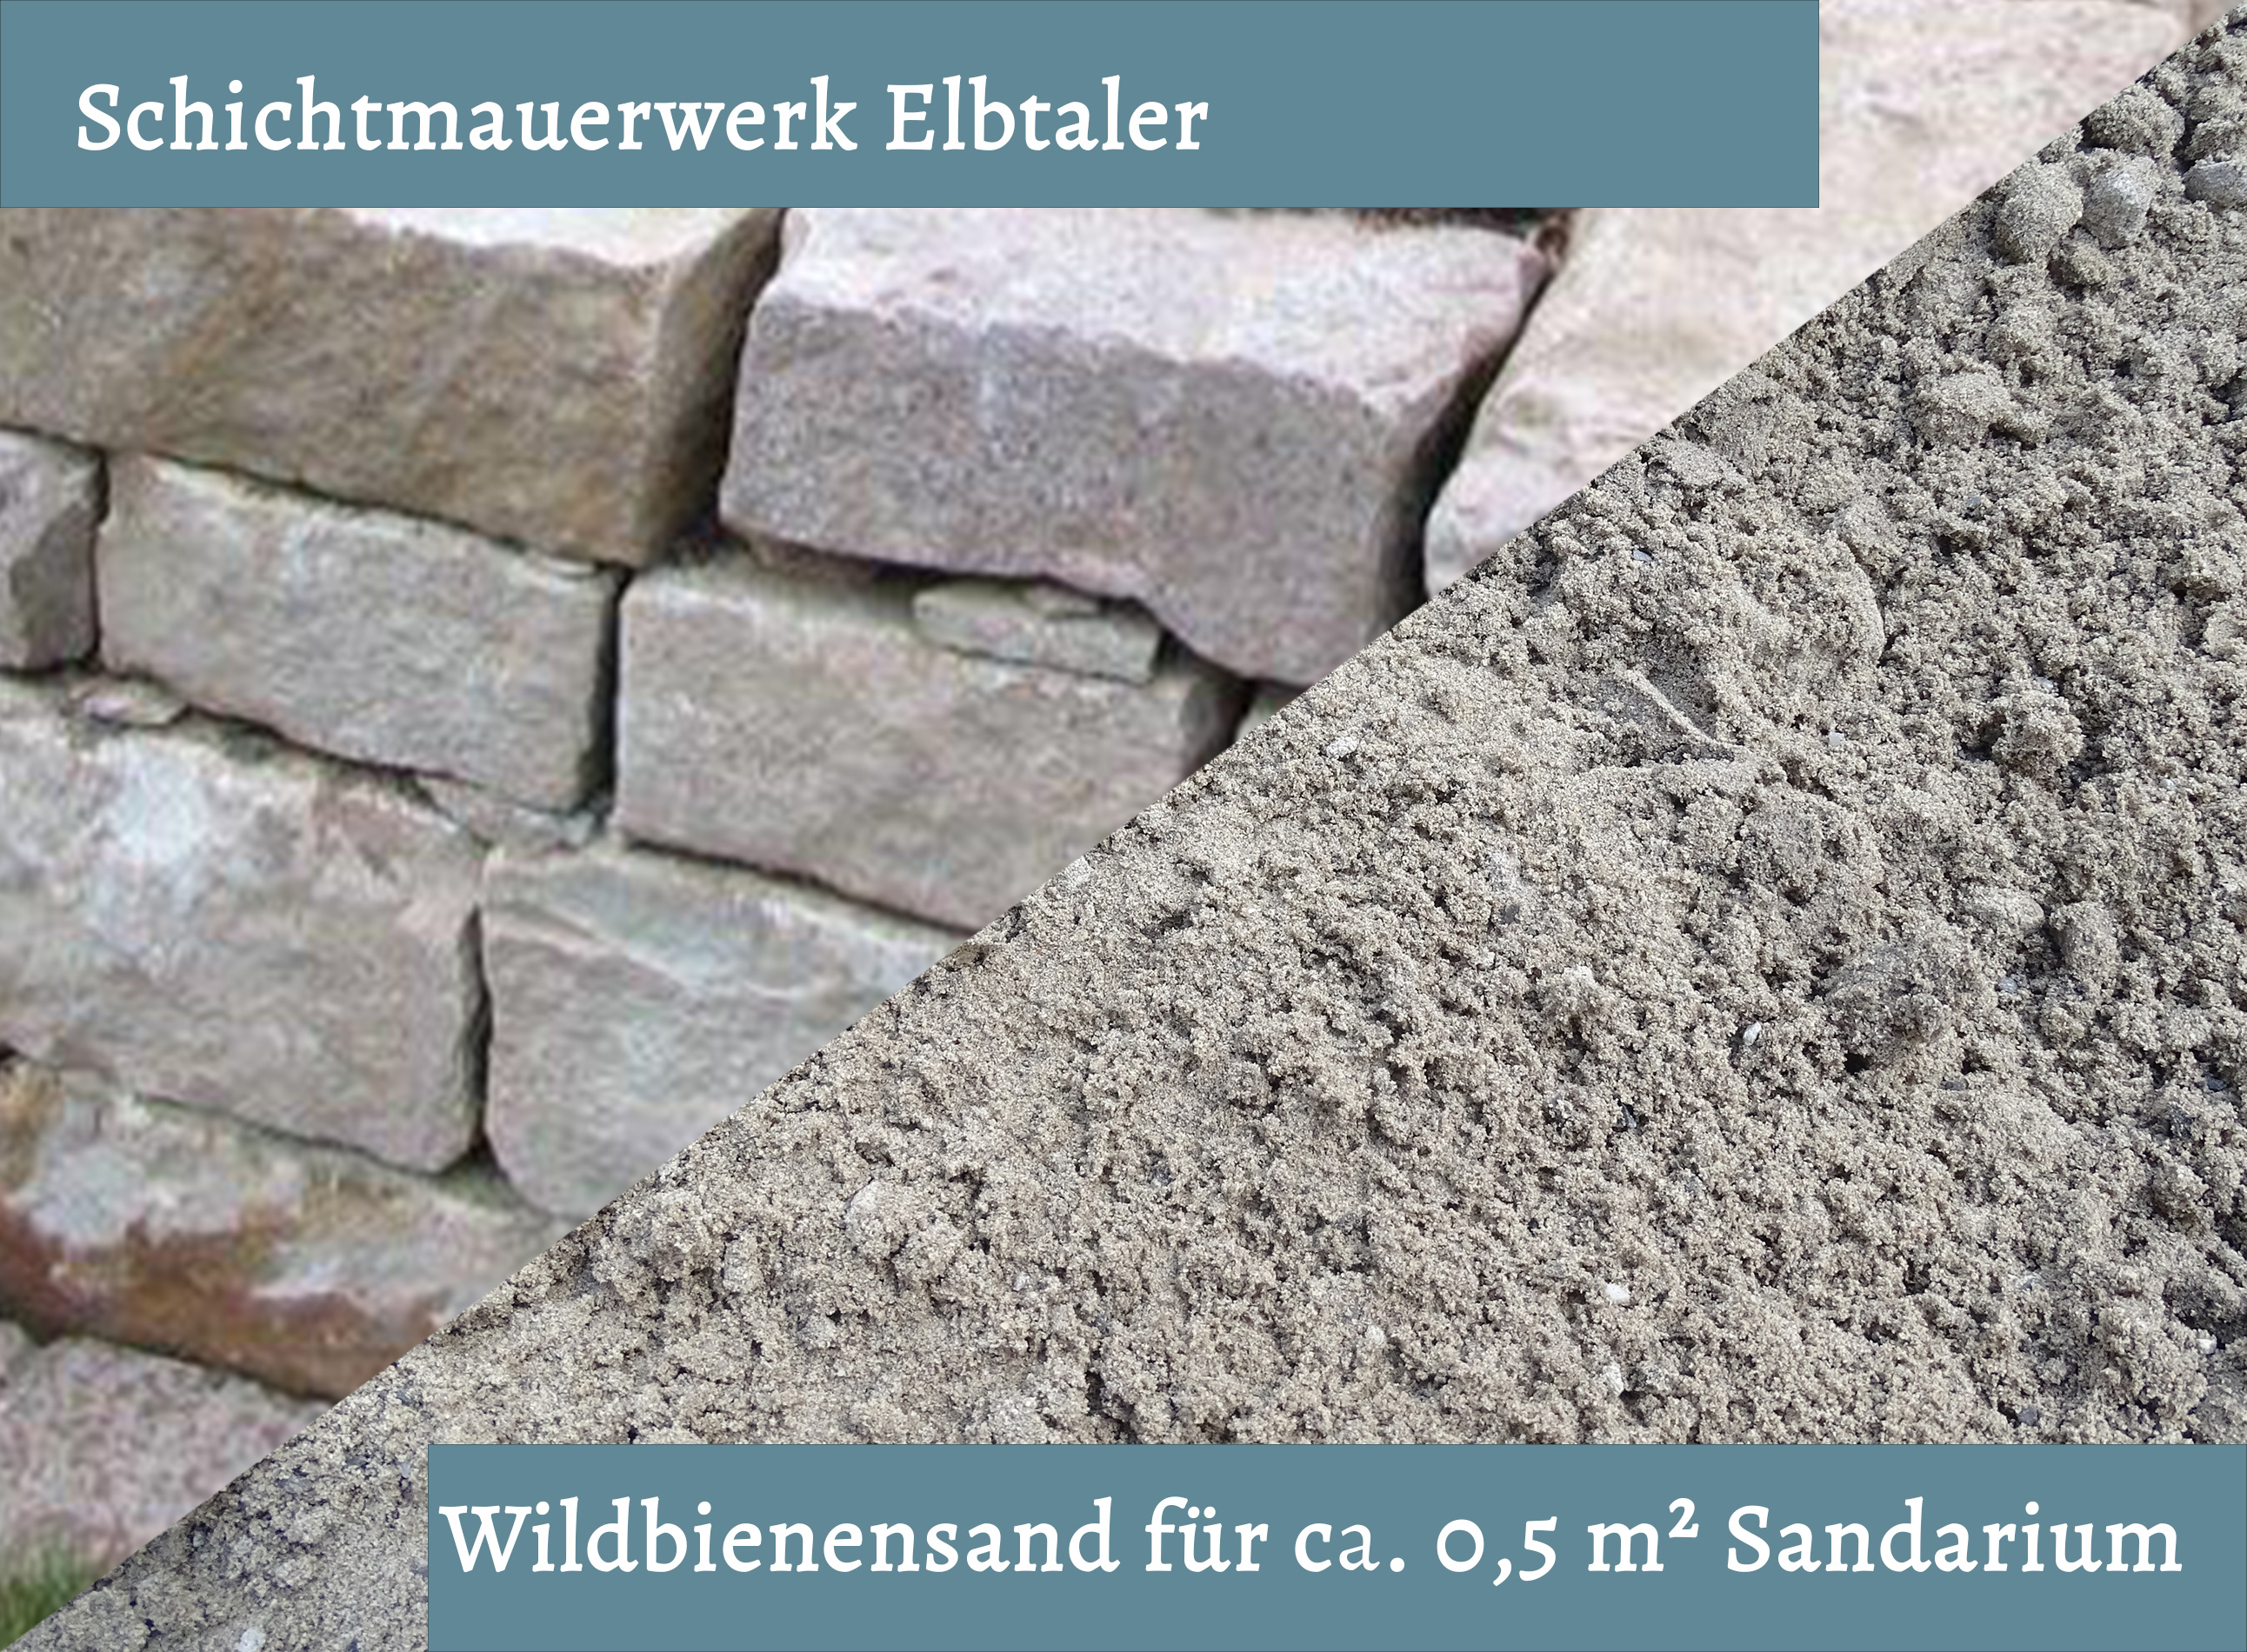 Wildbienensand mit Schichtmauer Elbtaler für Sandarium 0,5 m²